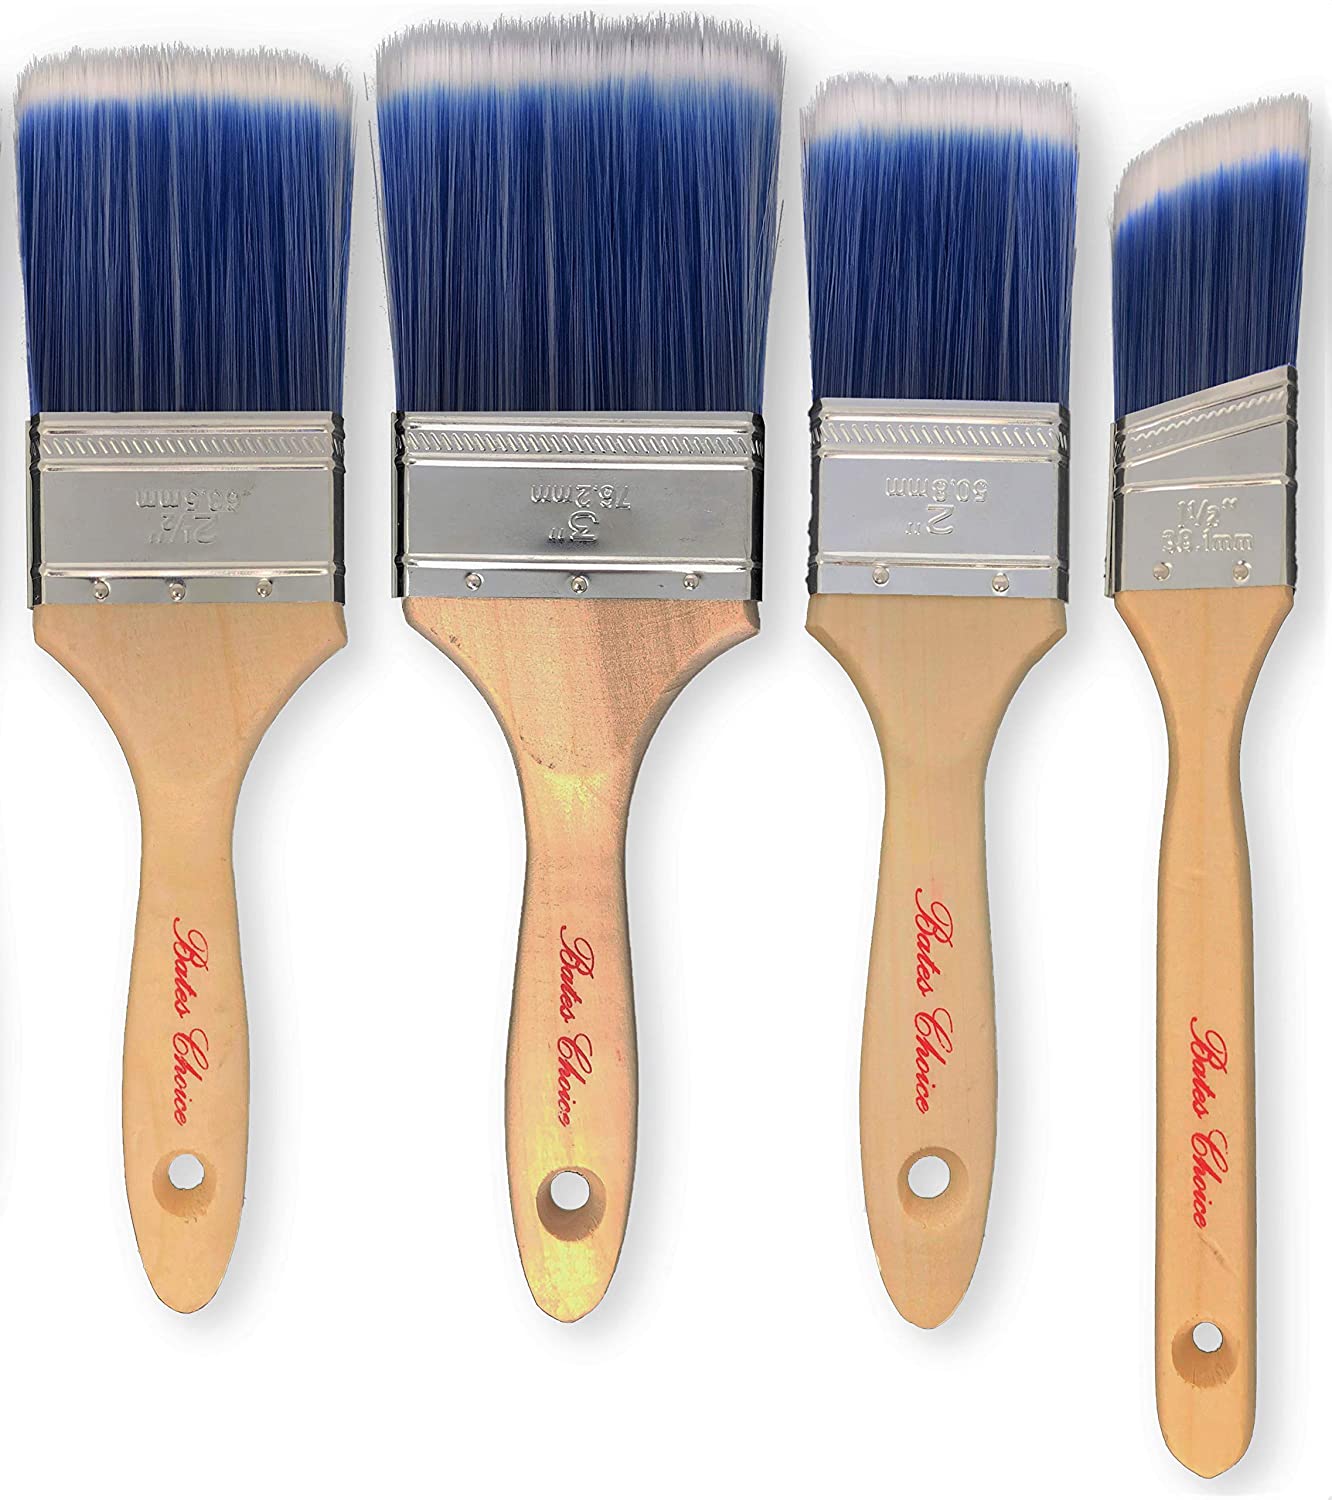 Bates Paint Brushes - 4 Pack, Wood Handle, Paint Brush, Paint